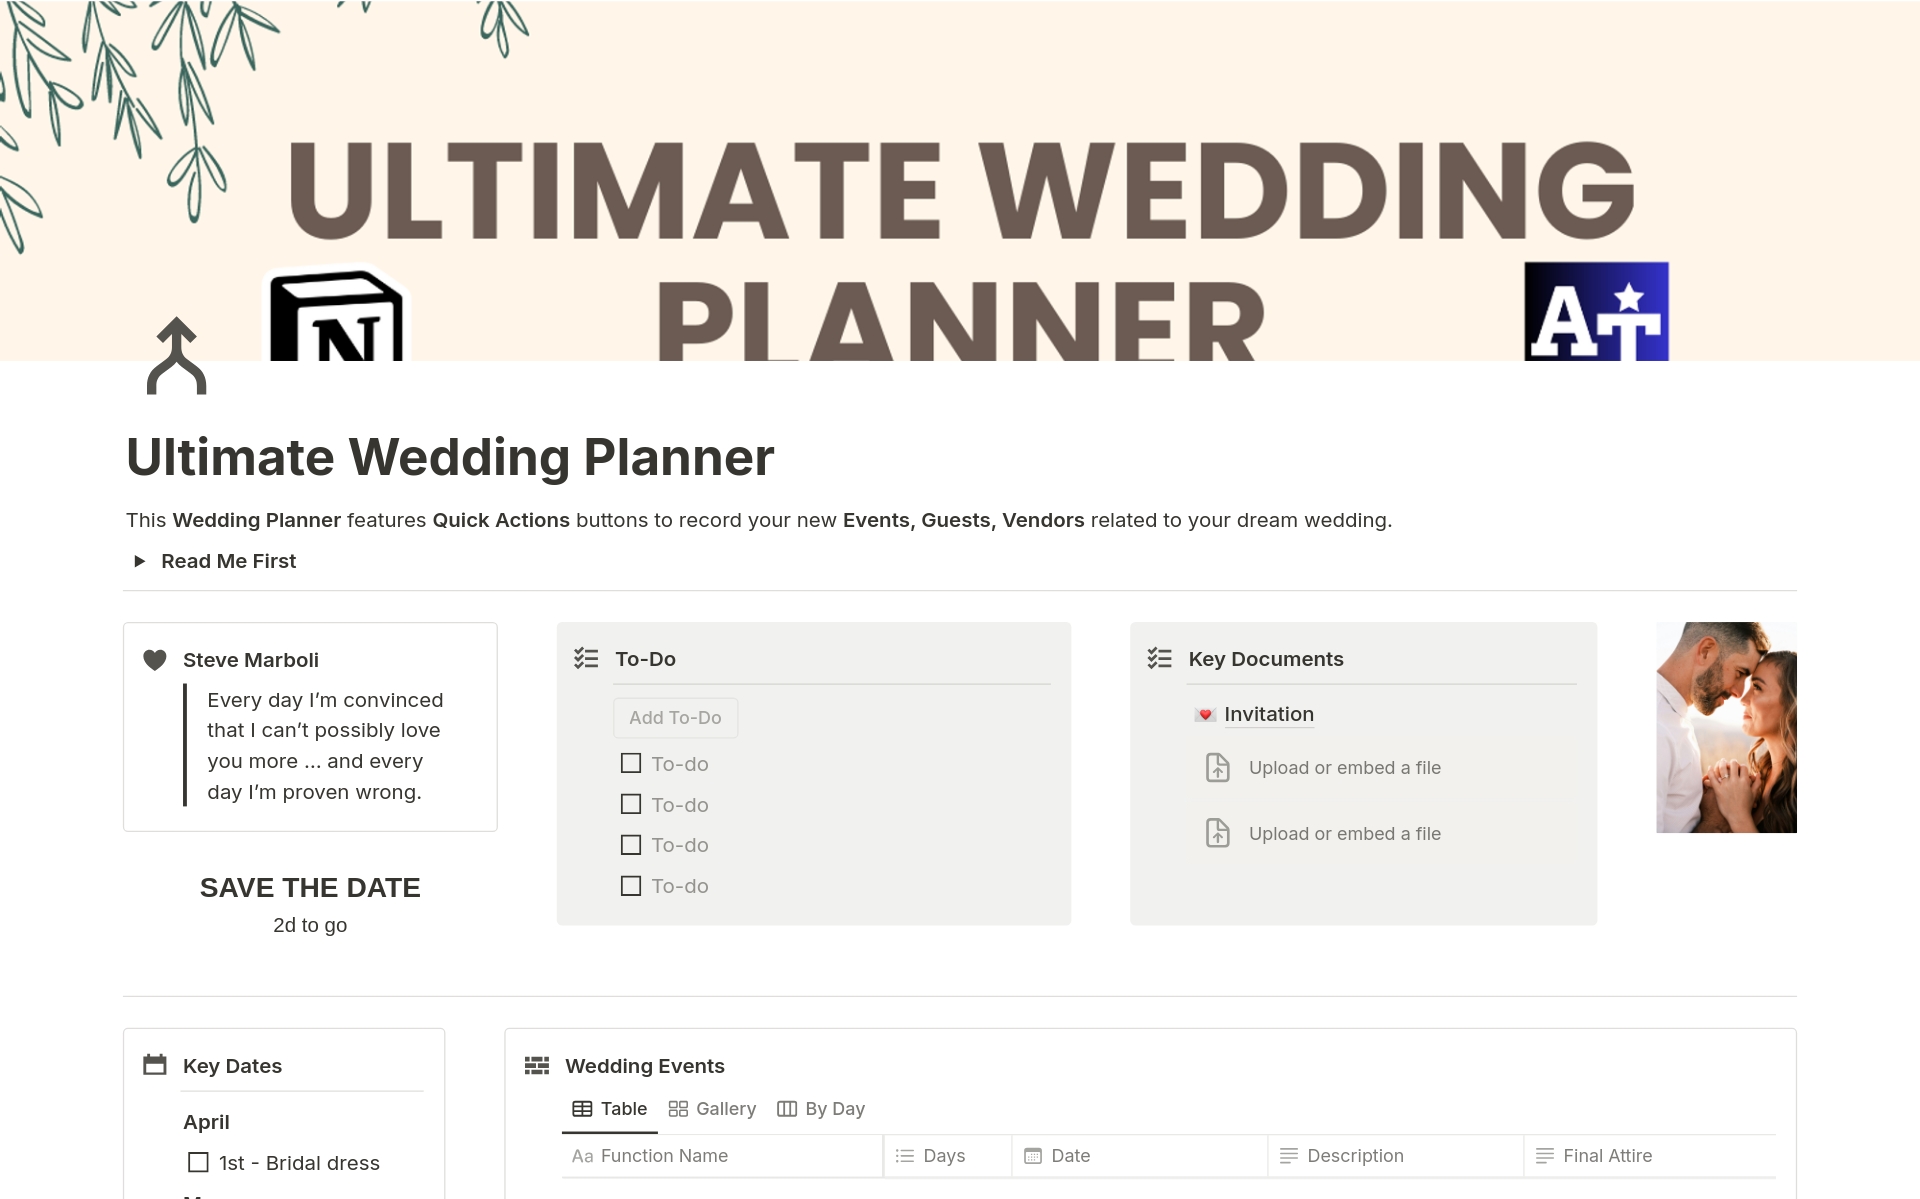 Uma prévia do modelo para Ultimate Wedding Planner